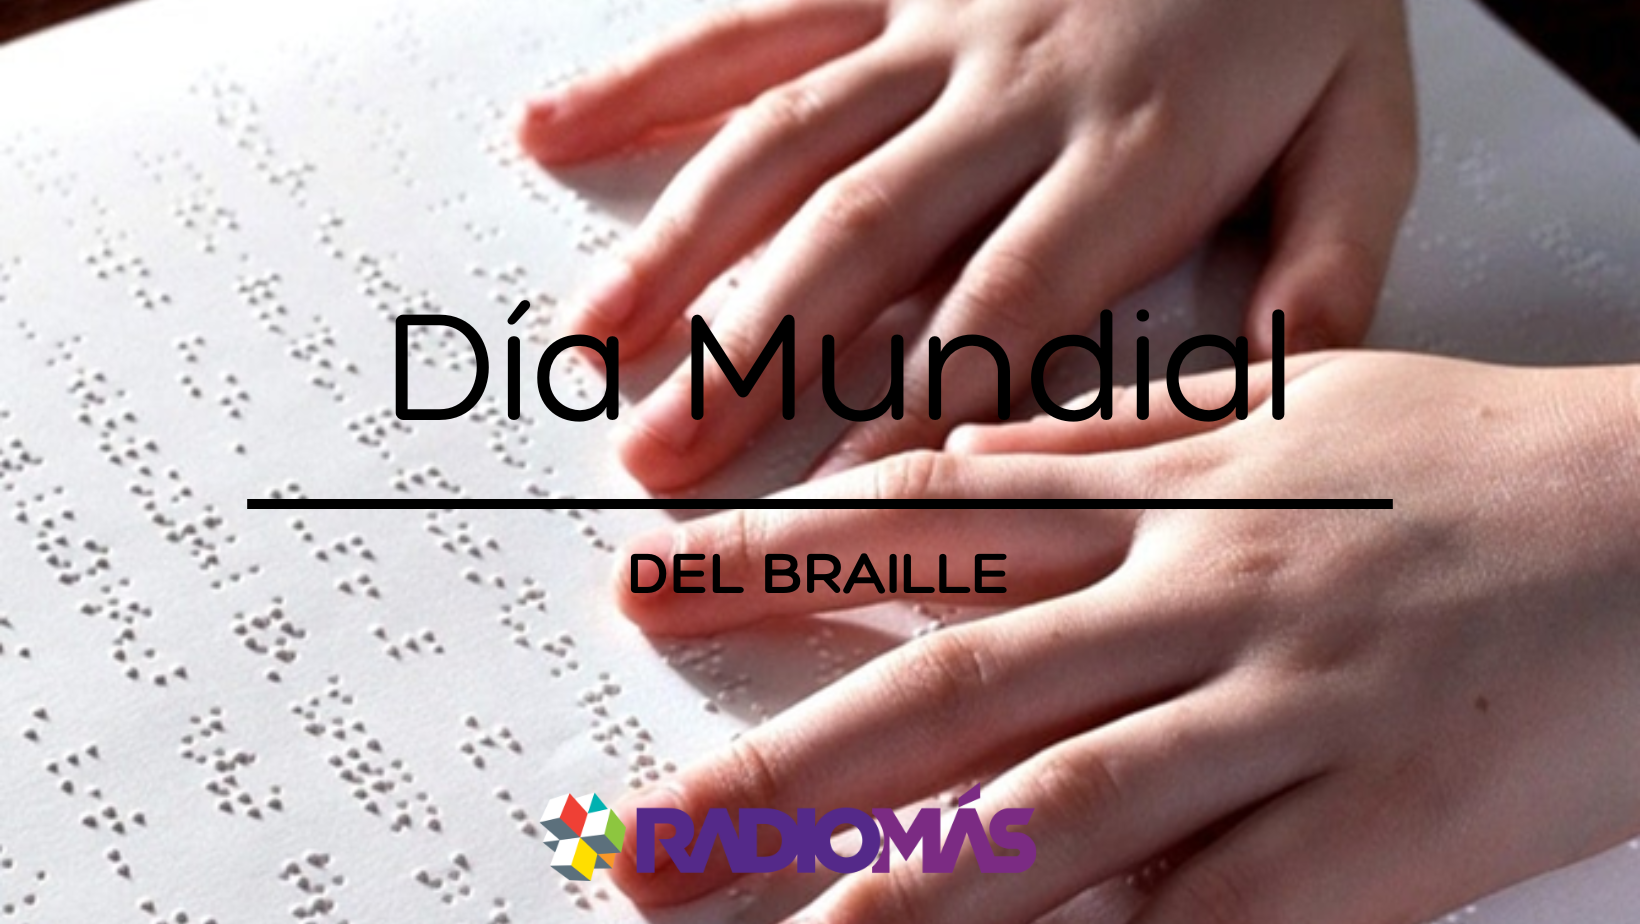 Día Mundial del Braille desde 2019: 04 de enero